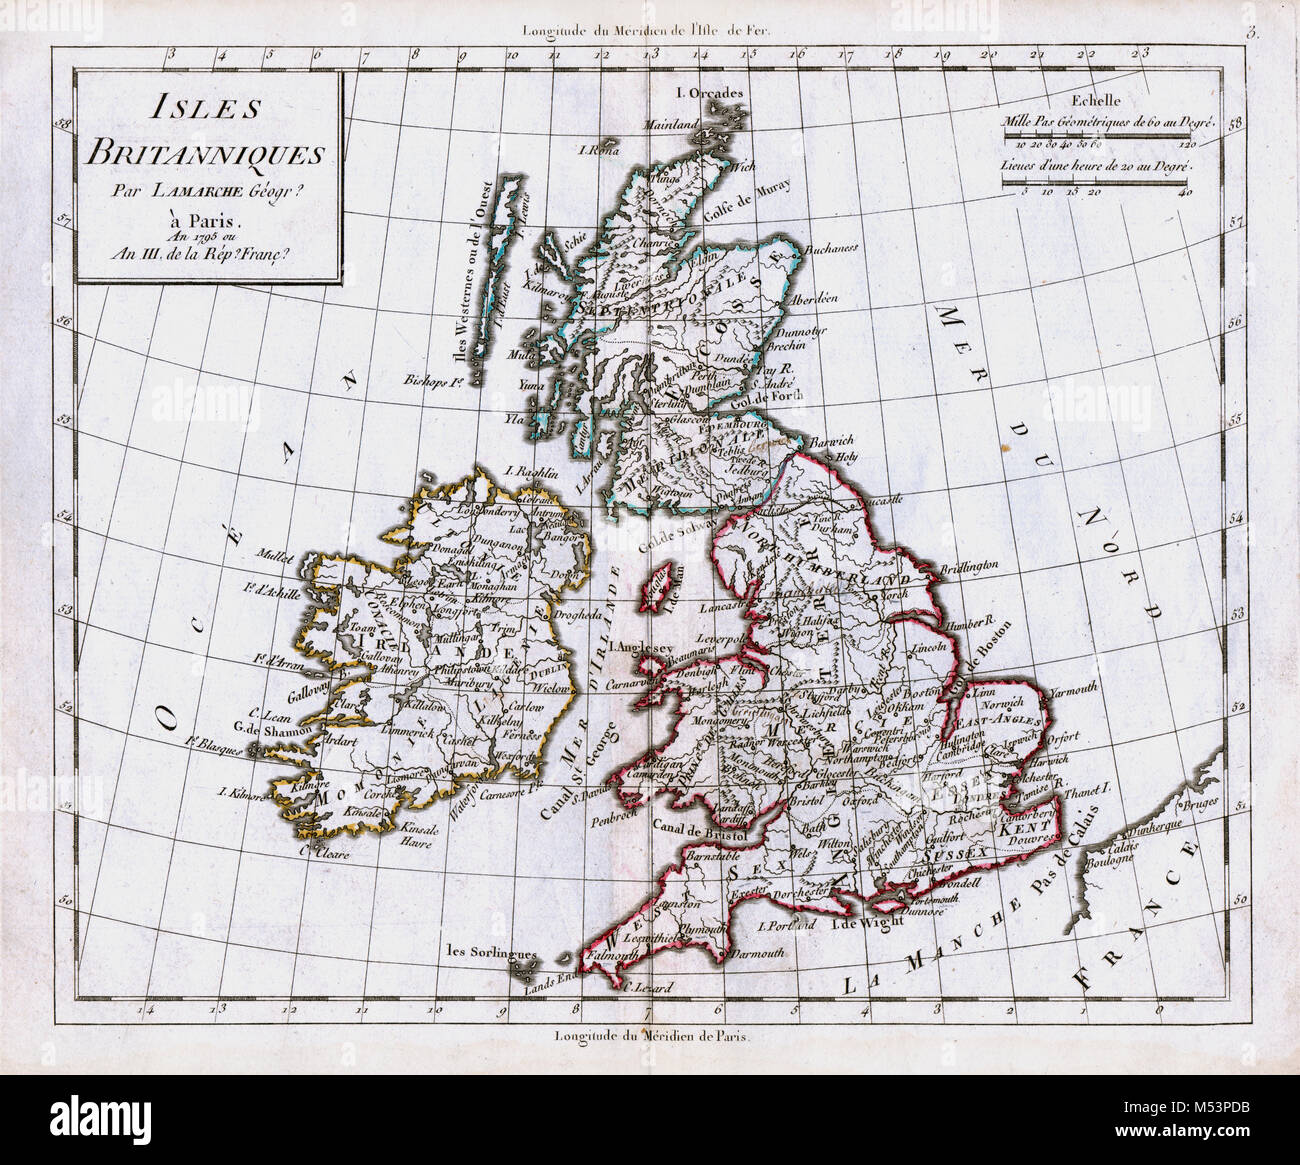 1830 Carte de l'Atlas Delamarche - Îles Britanniques - Grande Bretagne et Irlande - Angleterre Ecosse Pays de Galles Londres Banque D'Images